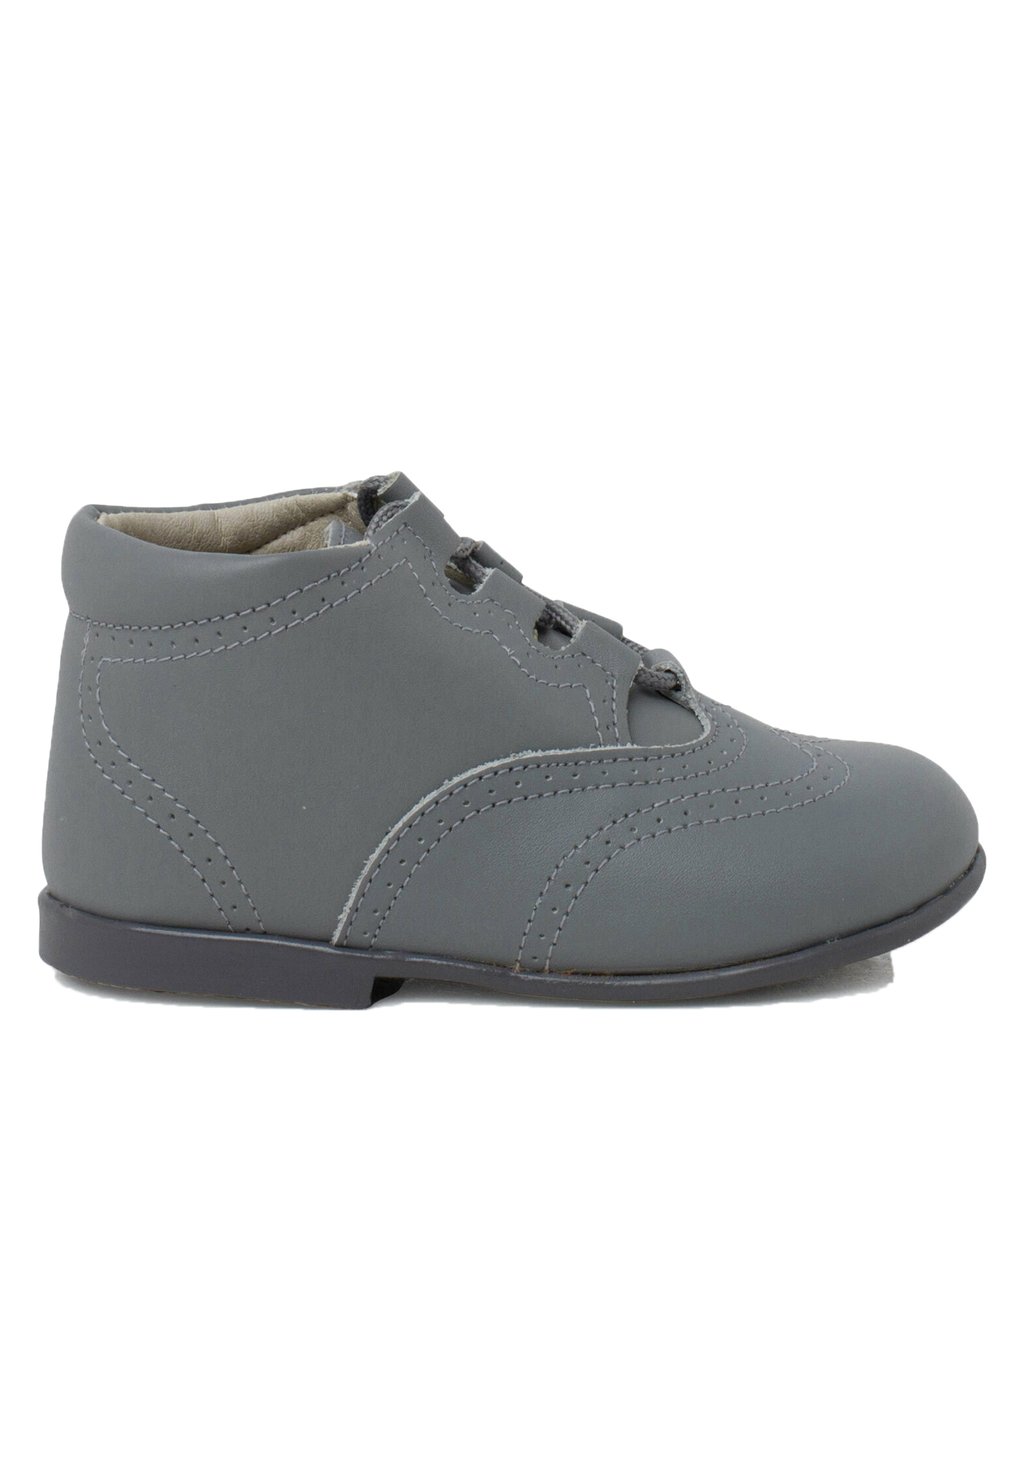 Обувь для обучения INGLESITO Pisamonas, цвет gris claro обувь для обучения oxford pisamonas цвет gris oscuro